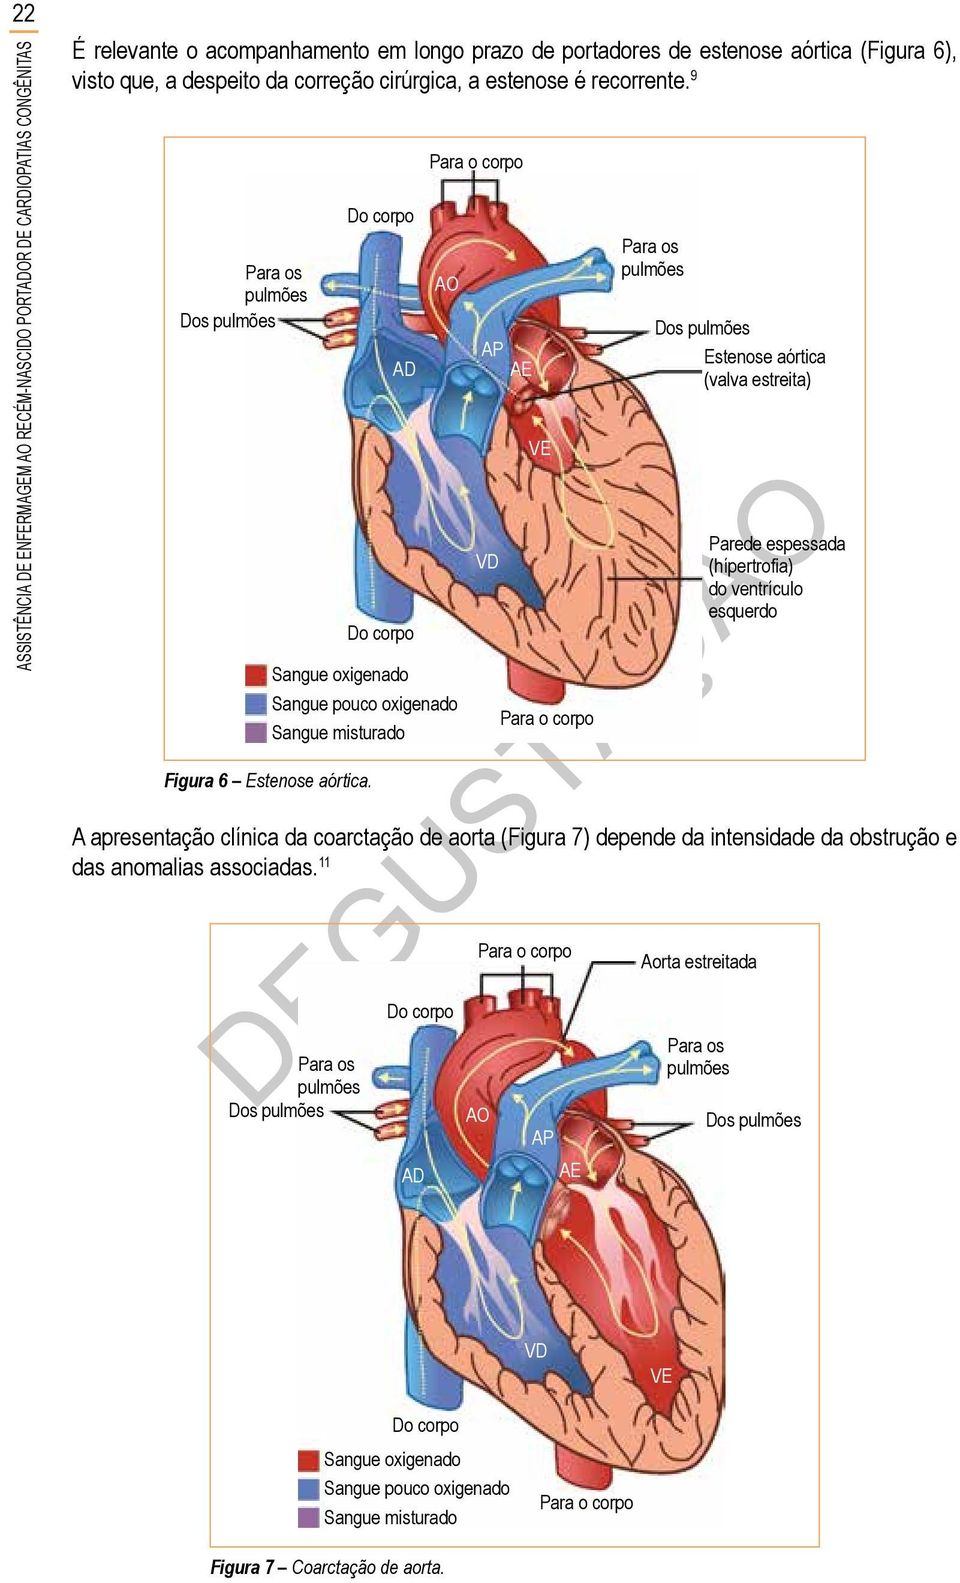 AP AE VD VE Estenose aórtica (valva estreita) Parede espessada (hípertrofia) do ventrículo esquerdo A apresentação clínica da coarctação de aorta (Figura 7) depende da